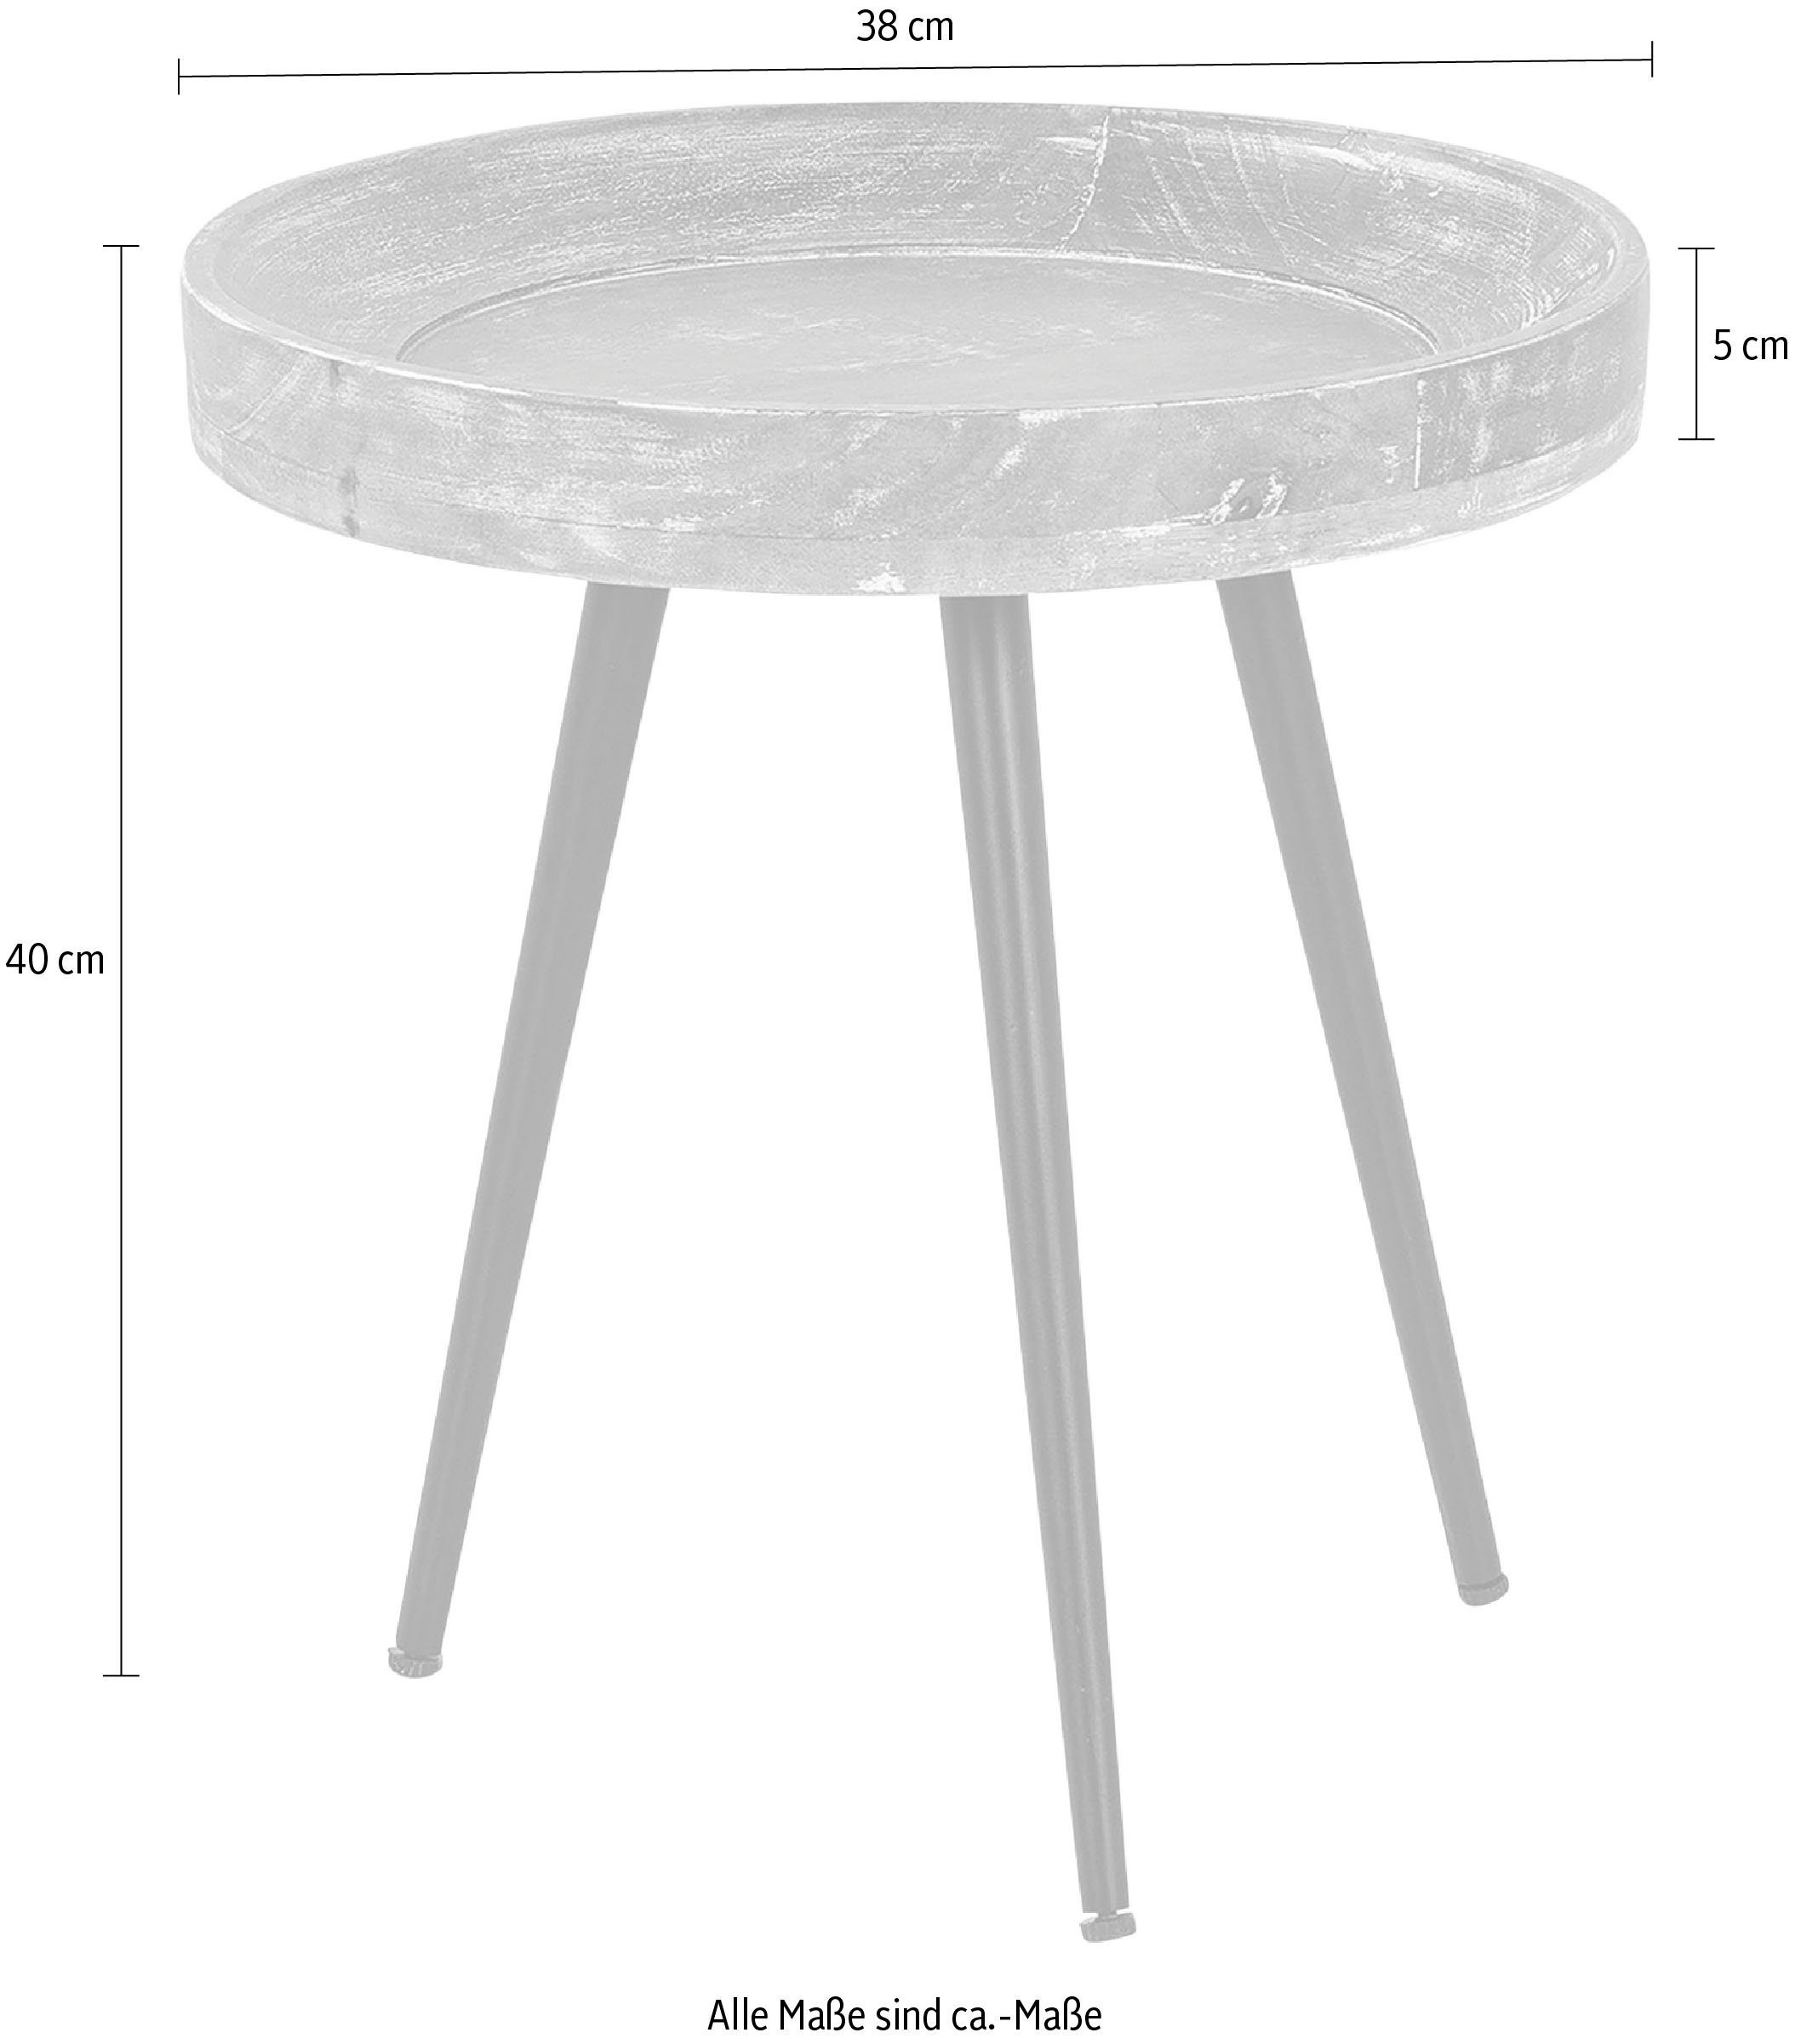 byLIVING Beistelltisch Ava, 45 oder Tischplatte, 38 cm runde Massive Durchmesser